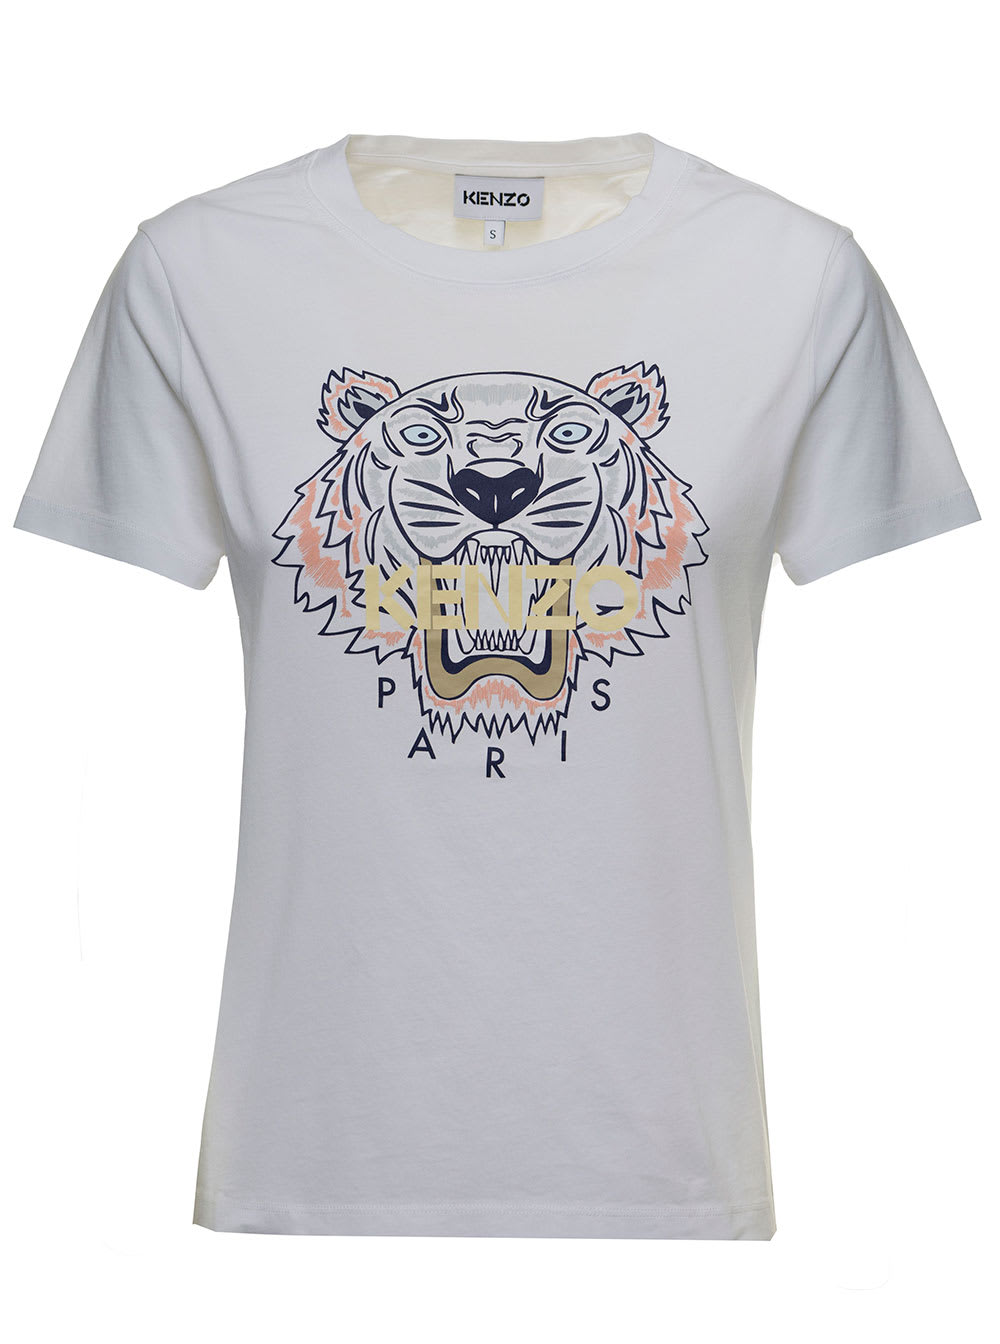 Kenzo White Cotton T-shirt With Tiger Logo